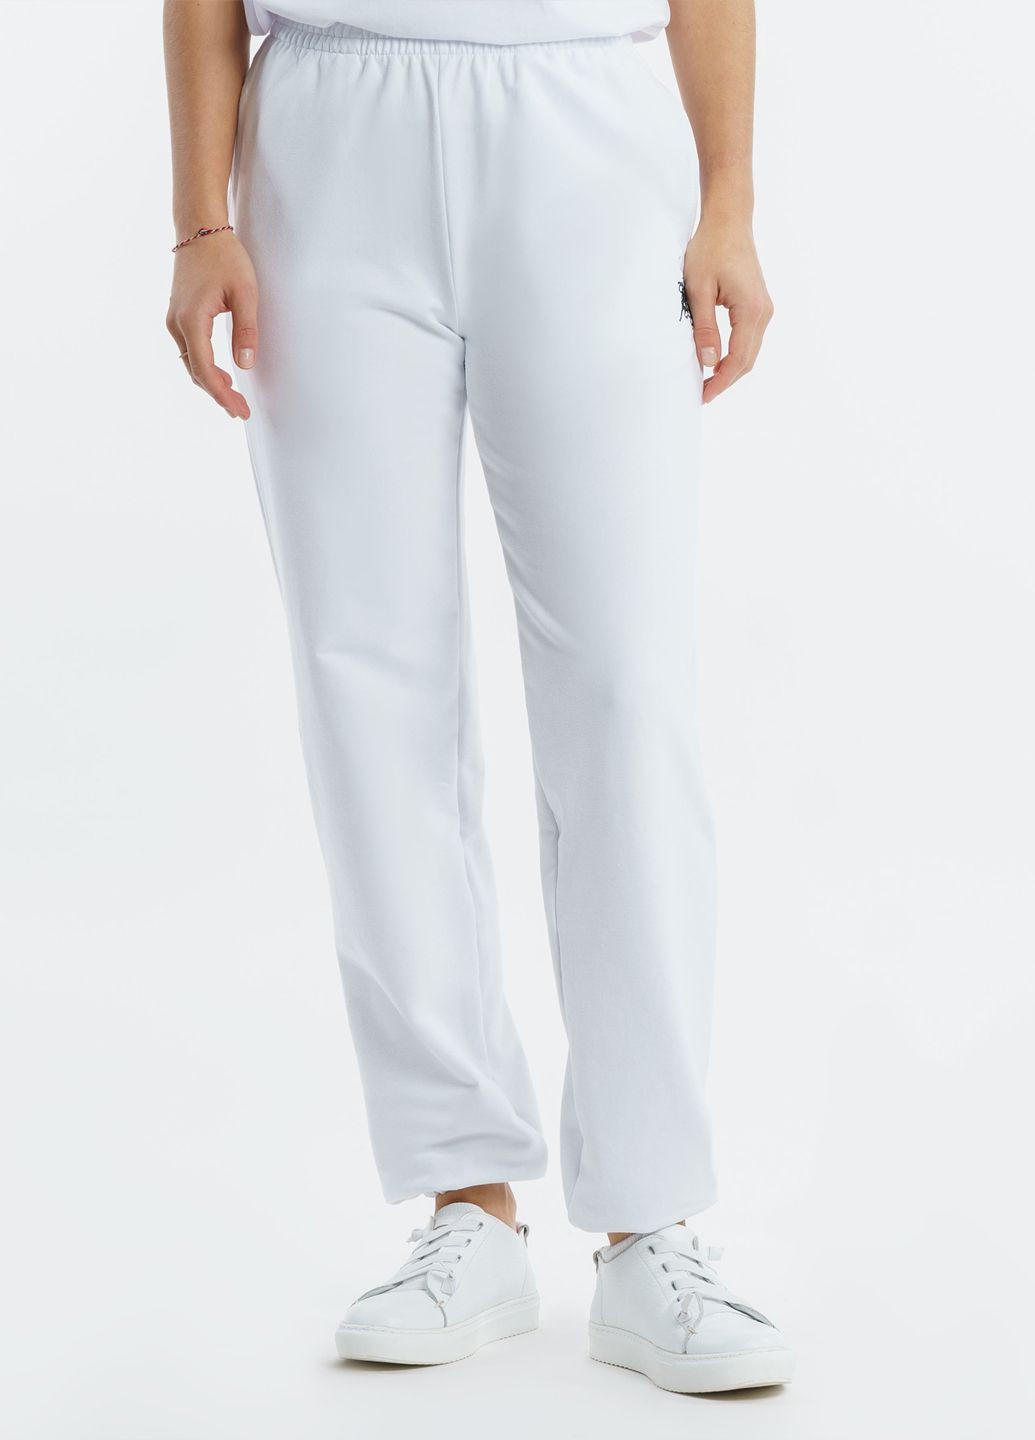 Спортивні штани жіночі Freedom білі Arber sportpants w6 (282841898)